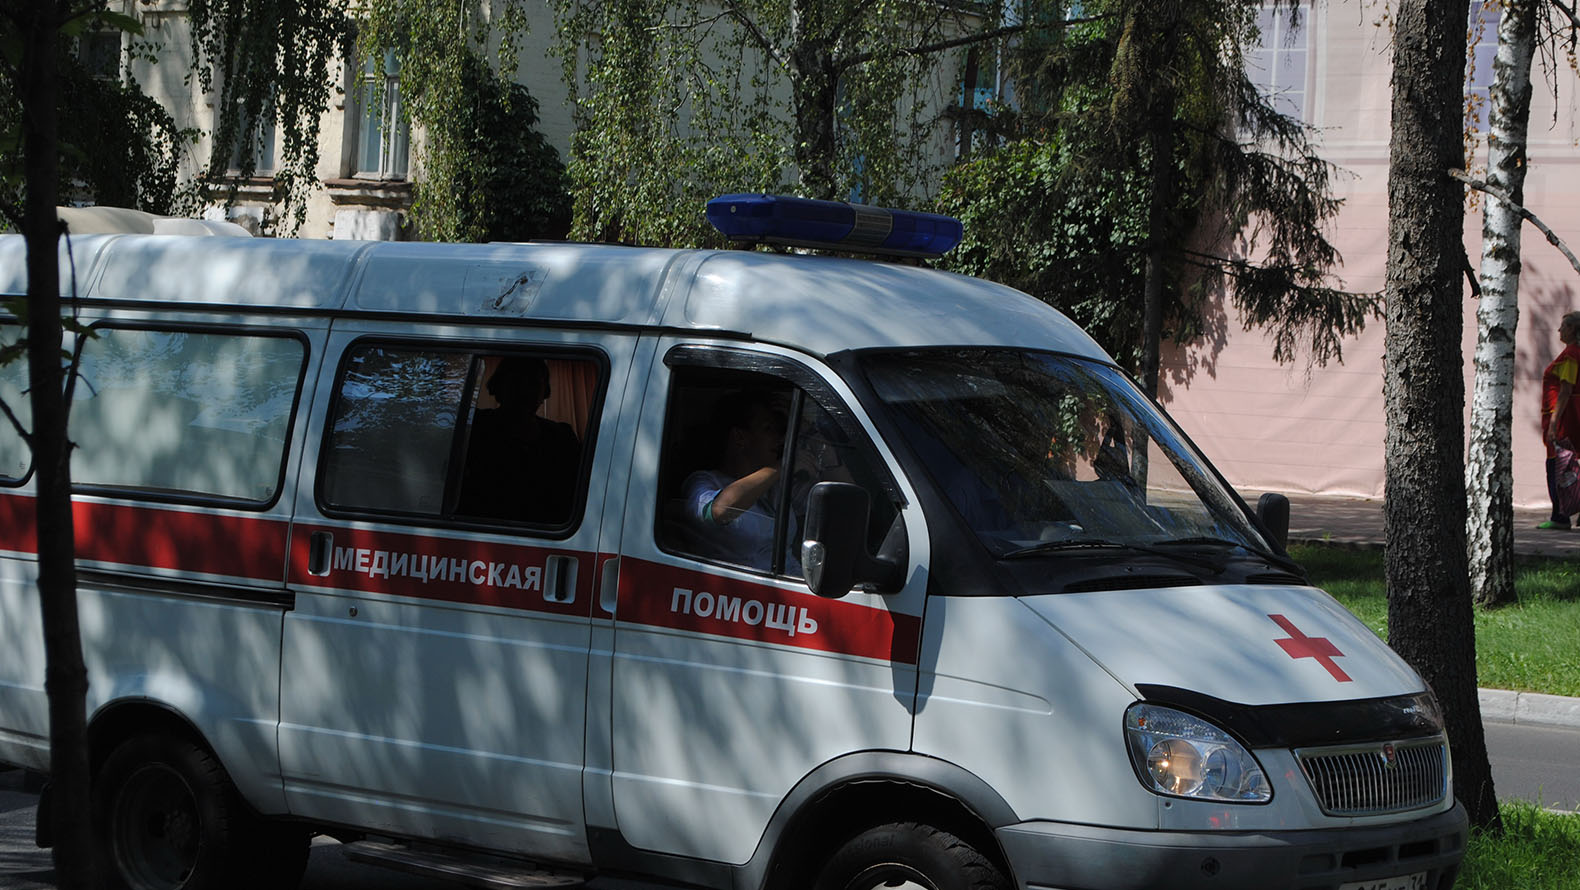 
                     Двое человек пострадали в массовом ДТП в центре Белгорода 
                